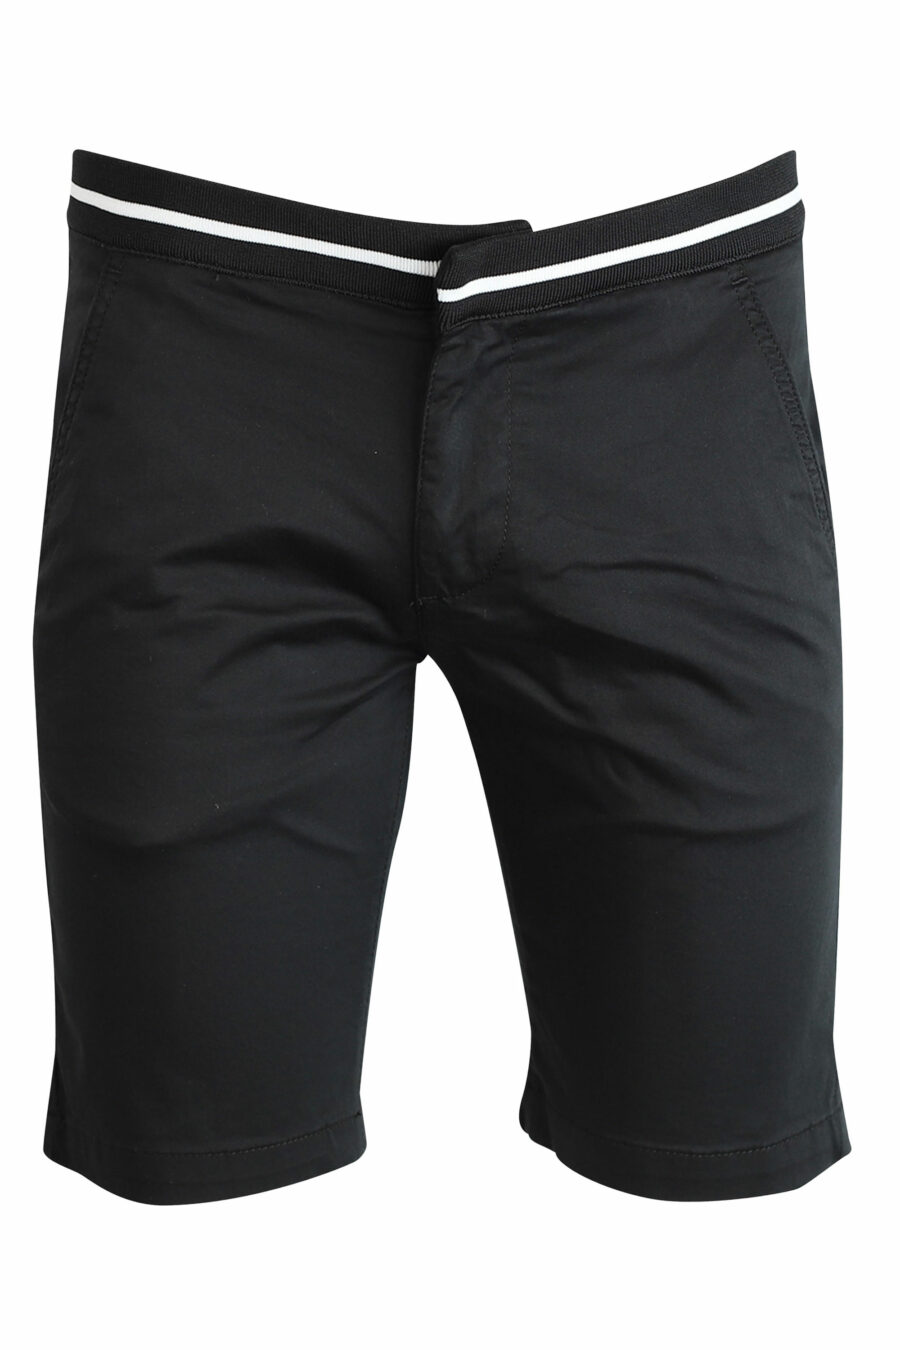 Schwarze Shorts mit weißen Details - 4062226164863